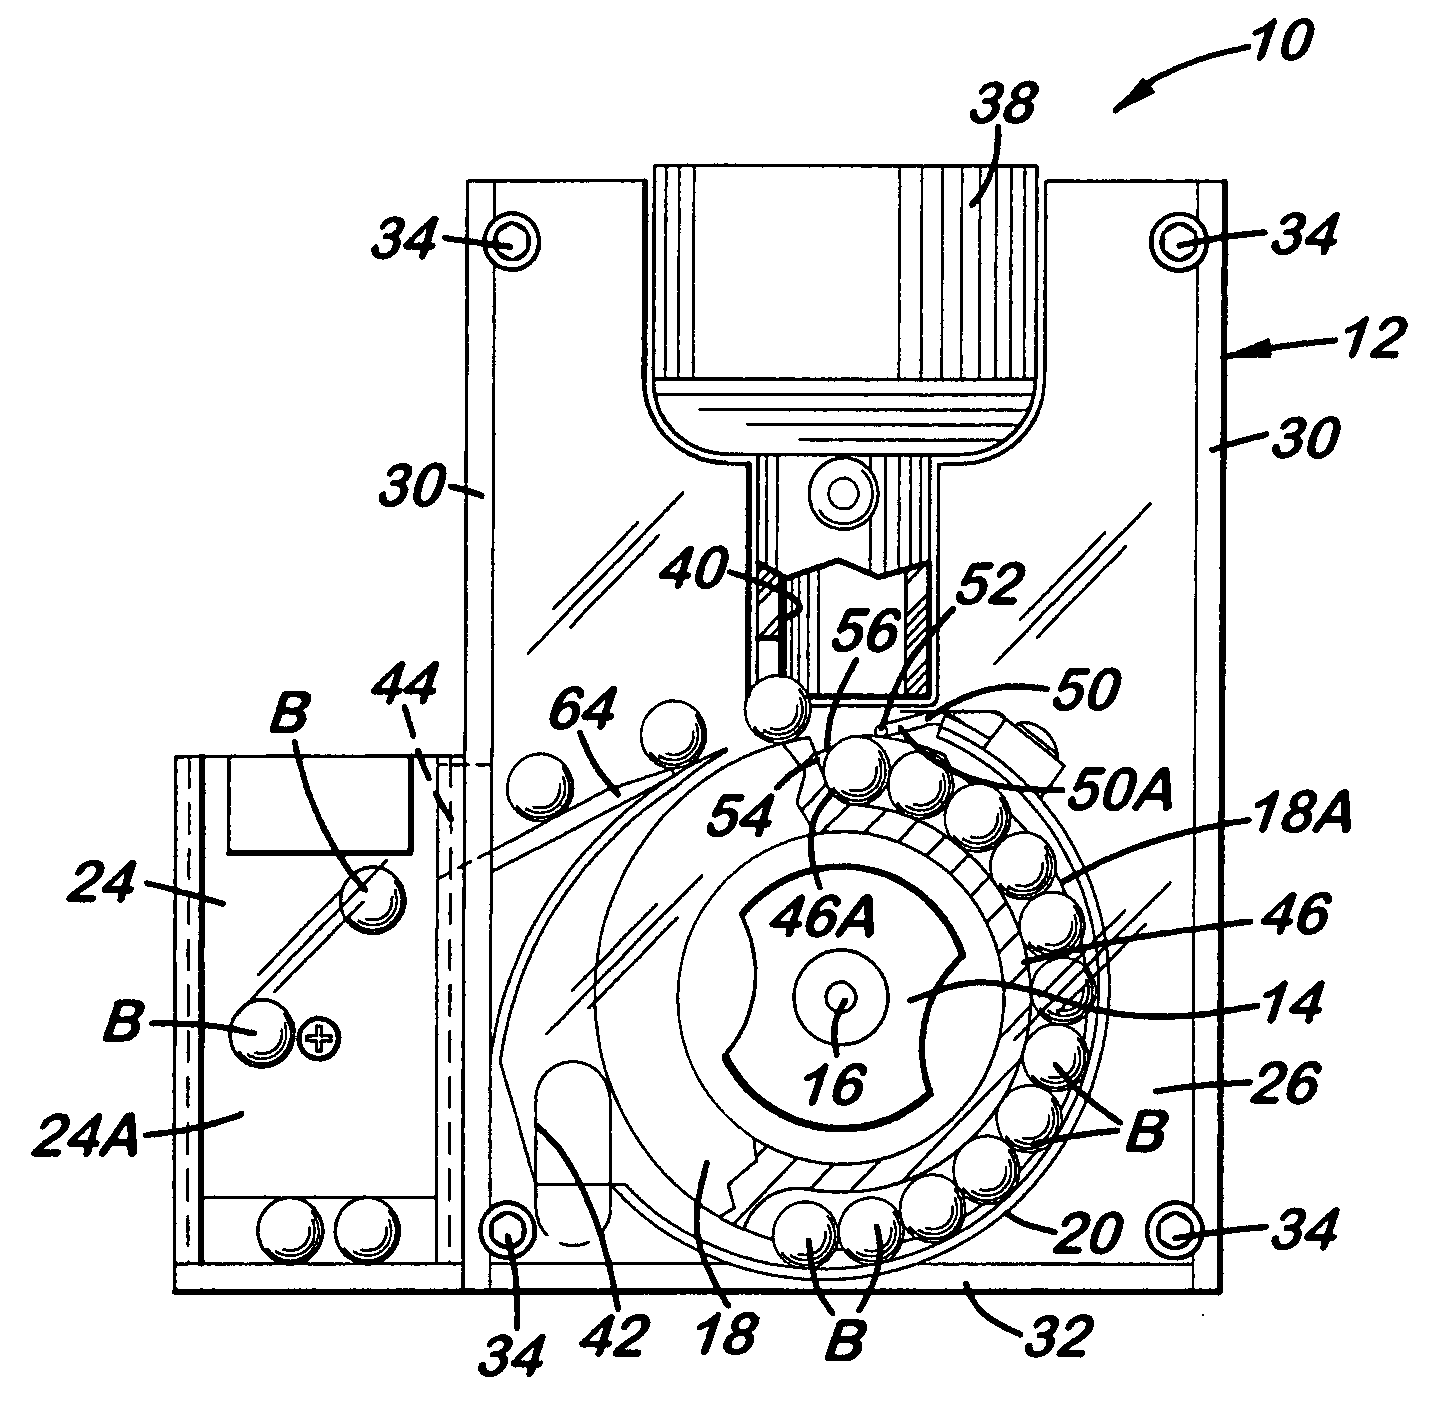 Ball bearing actuation mechanism